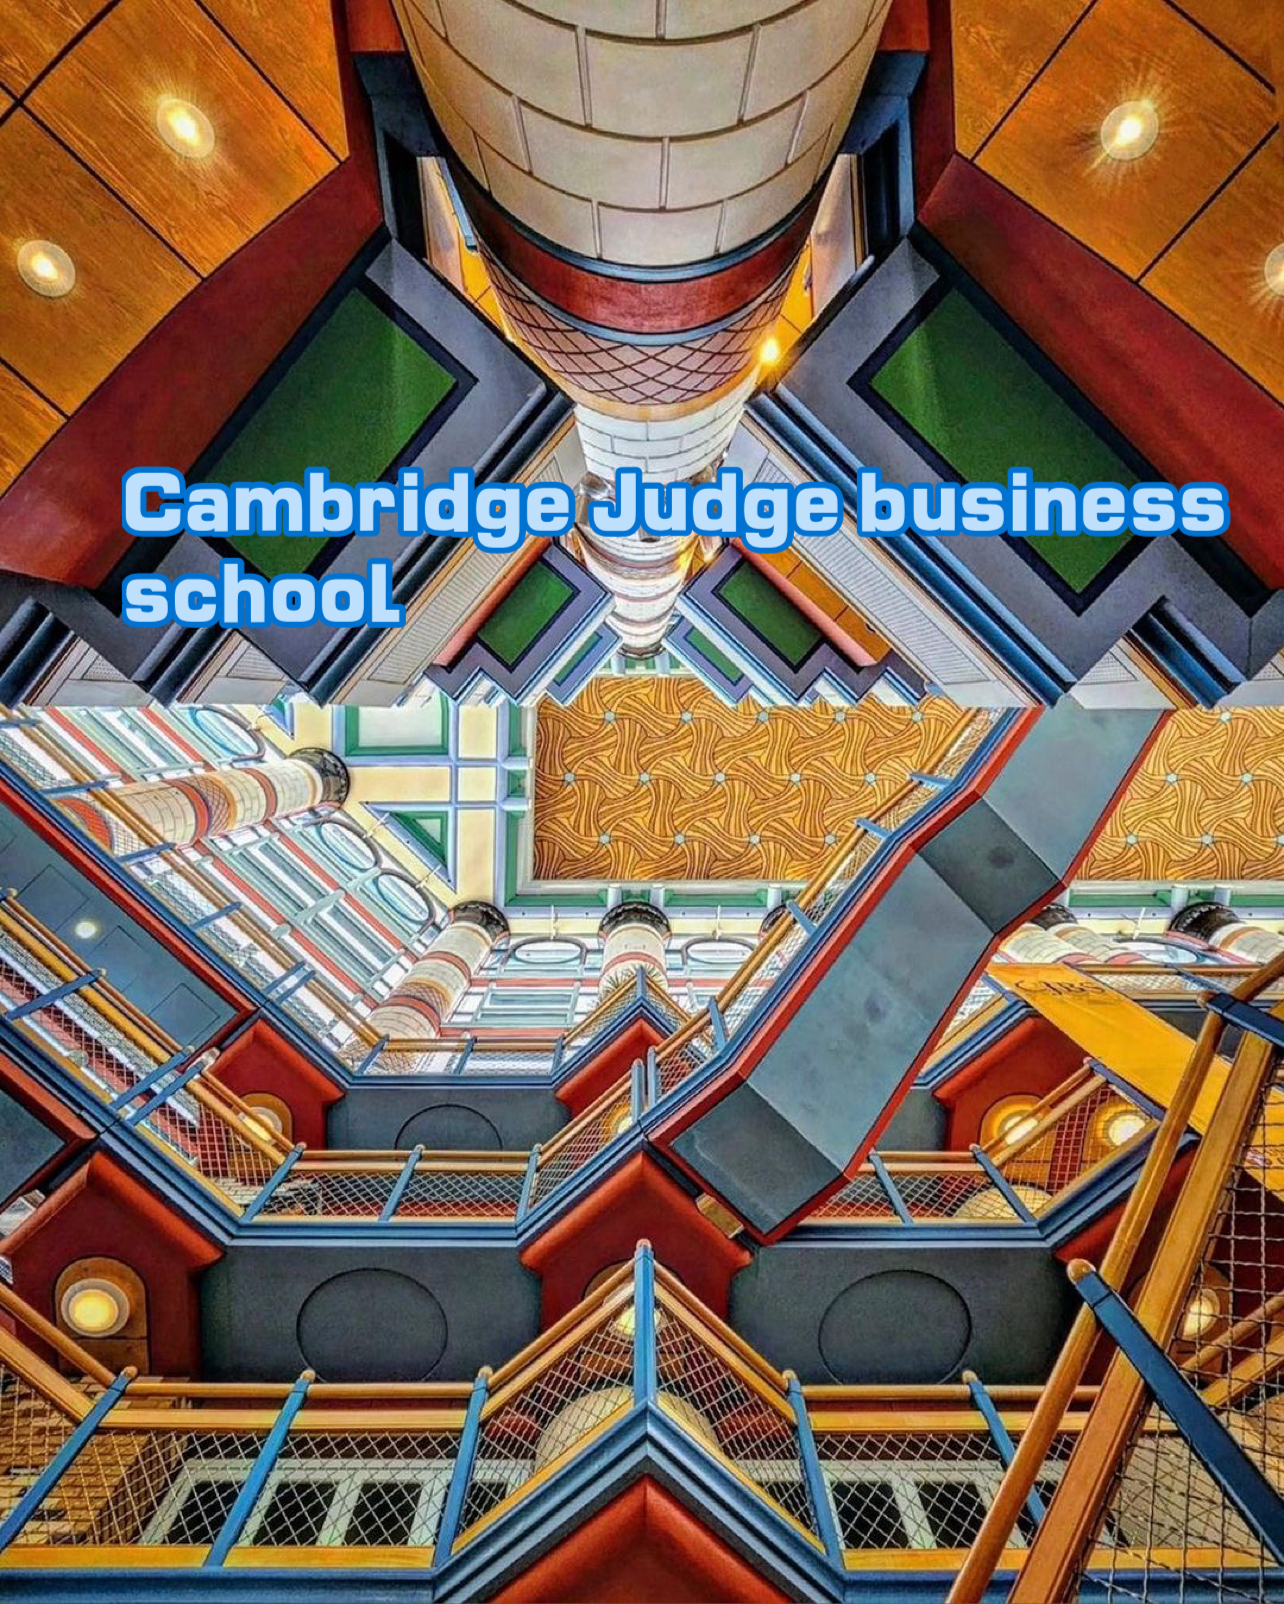 Cambridge Judge business schoo